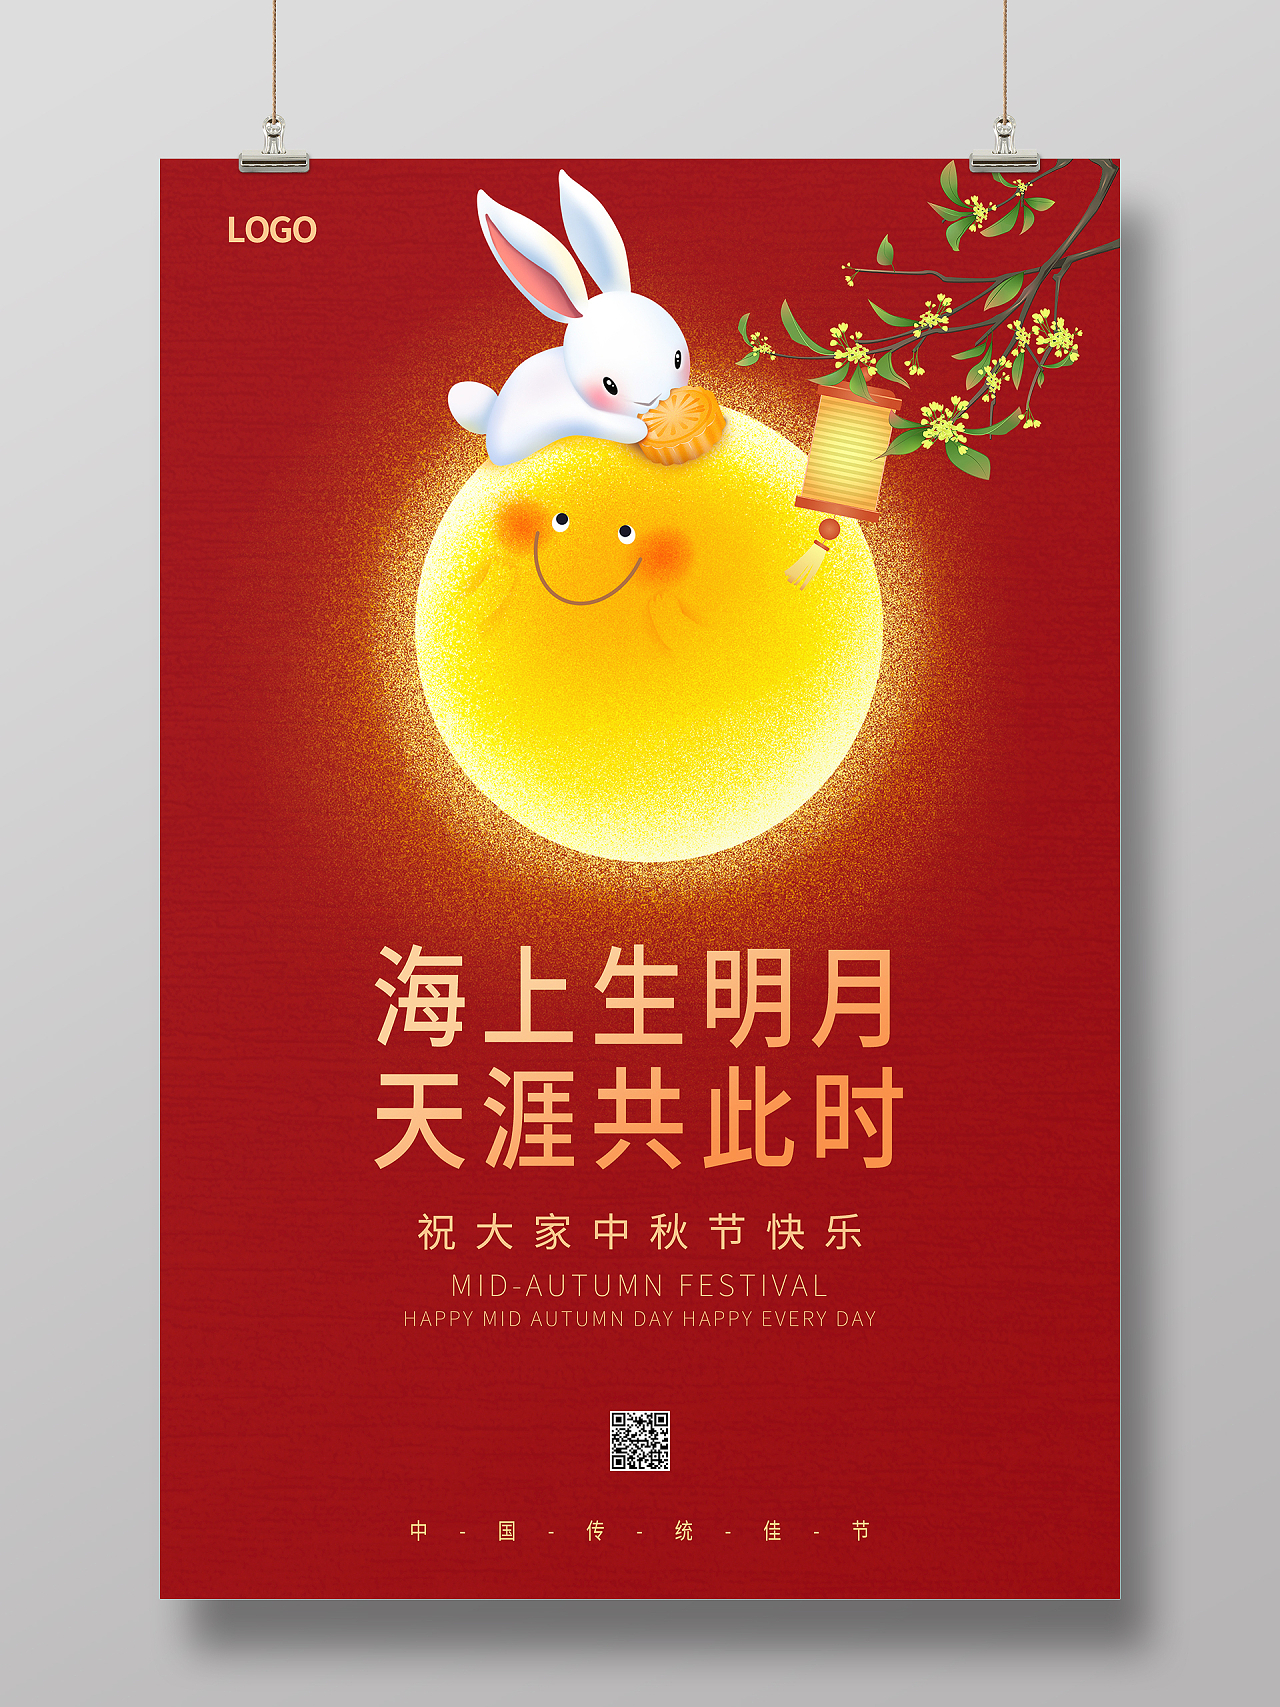 红色喜庆手绘月亮兔子海上生明月天涯共此时中秋节海报设计中秋海报